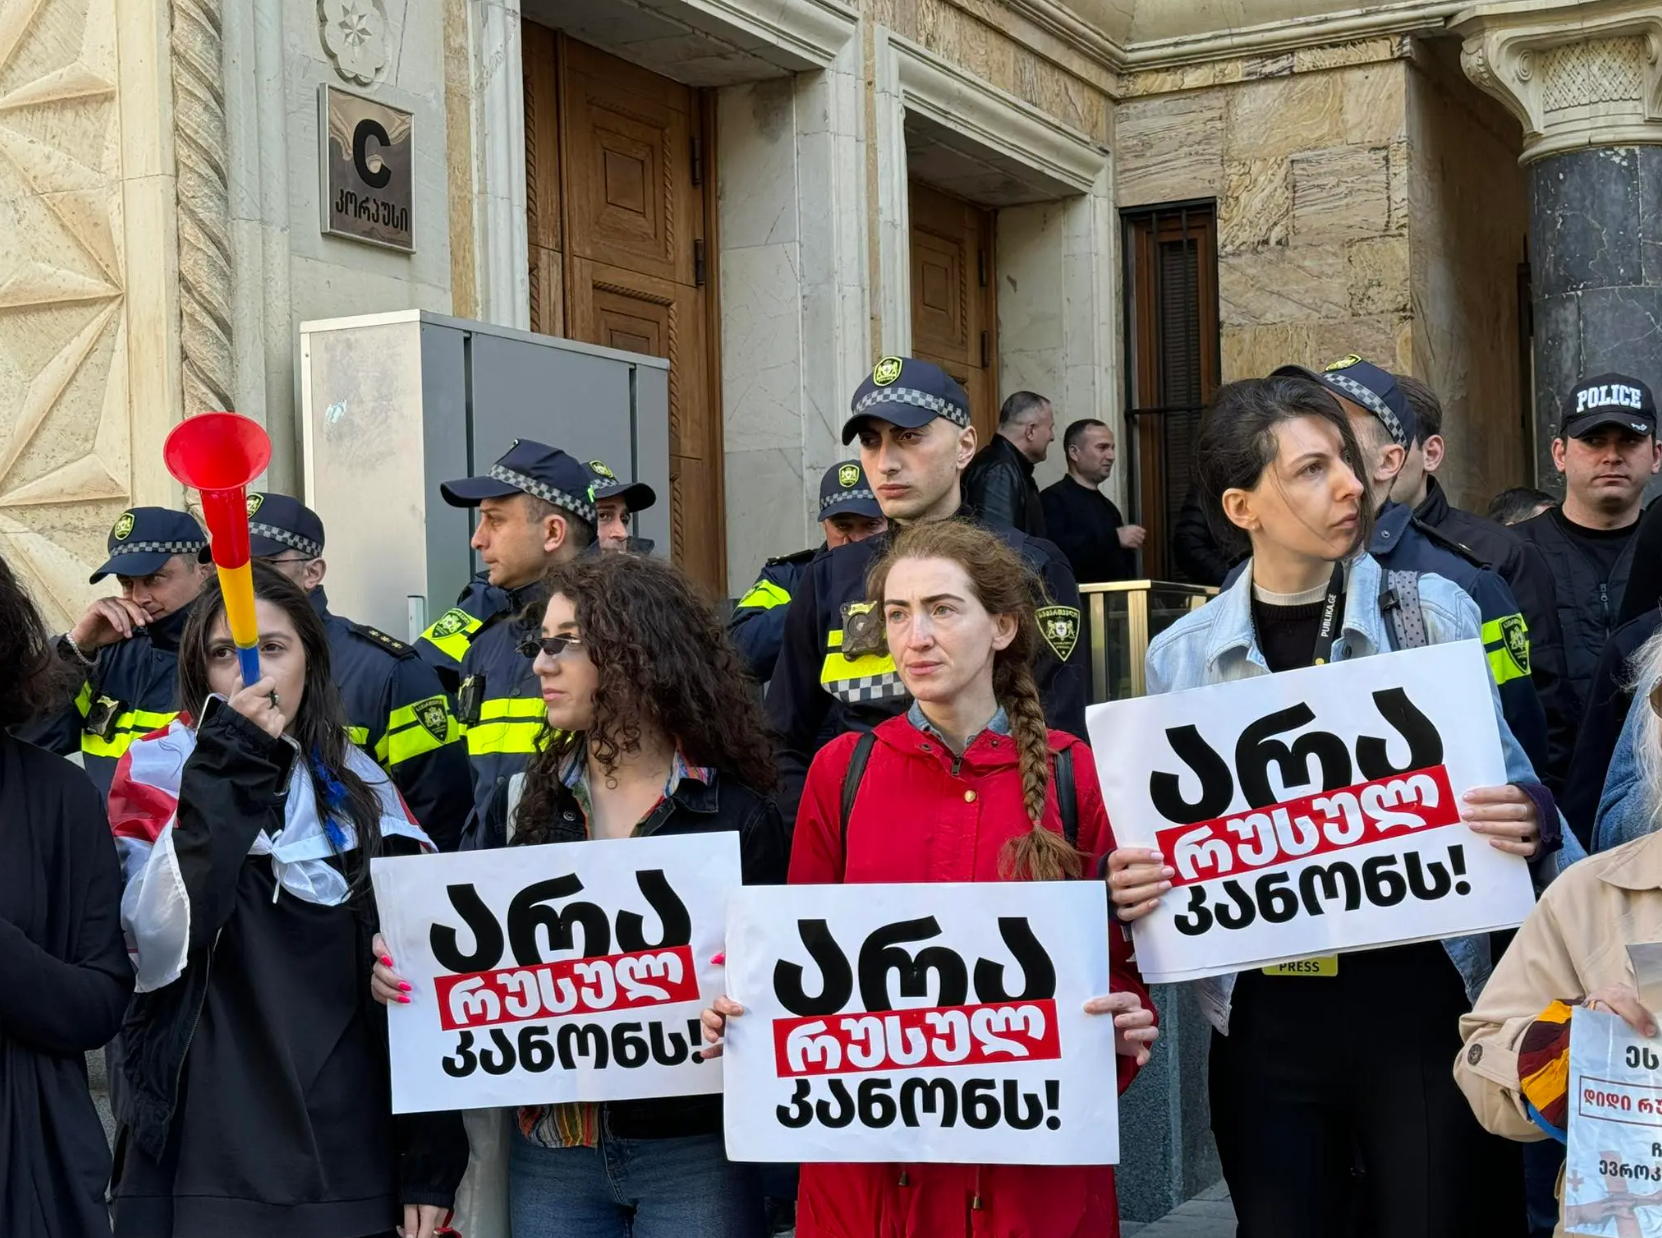 "Нет России, да Европе": в Тбилиси вспыхнули протесты против закона об "иноагентах", в парламенте произошла драка. Фото и видео